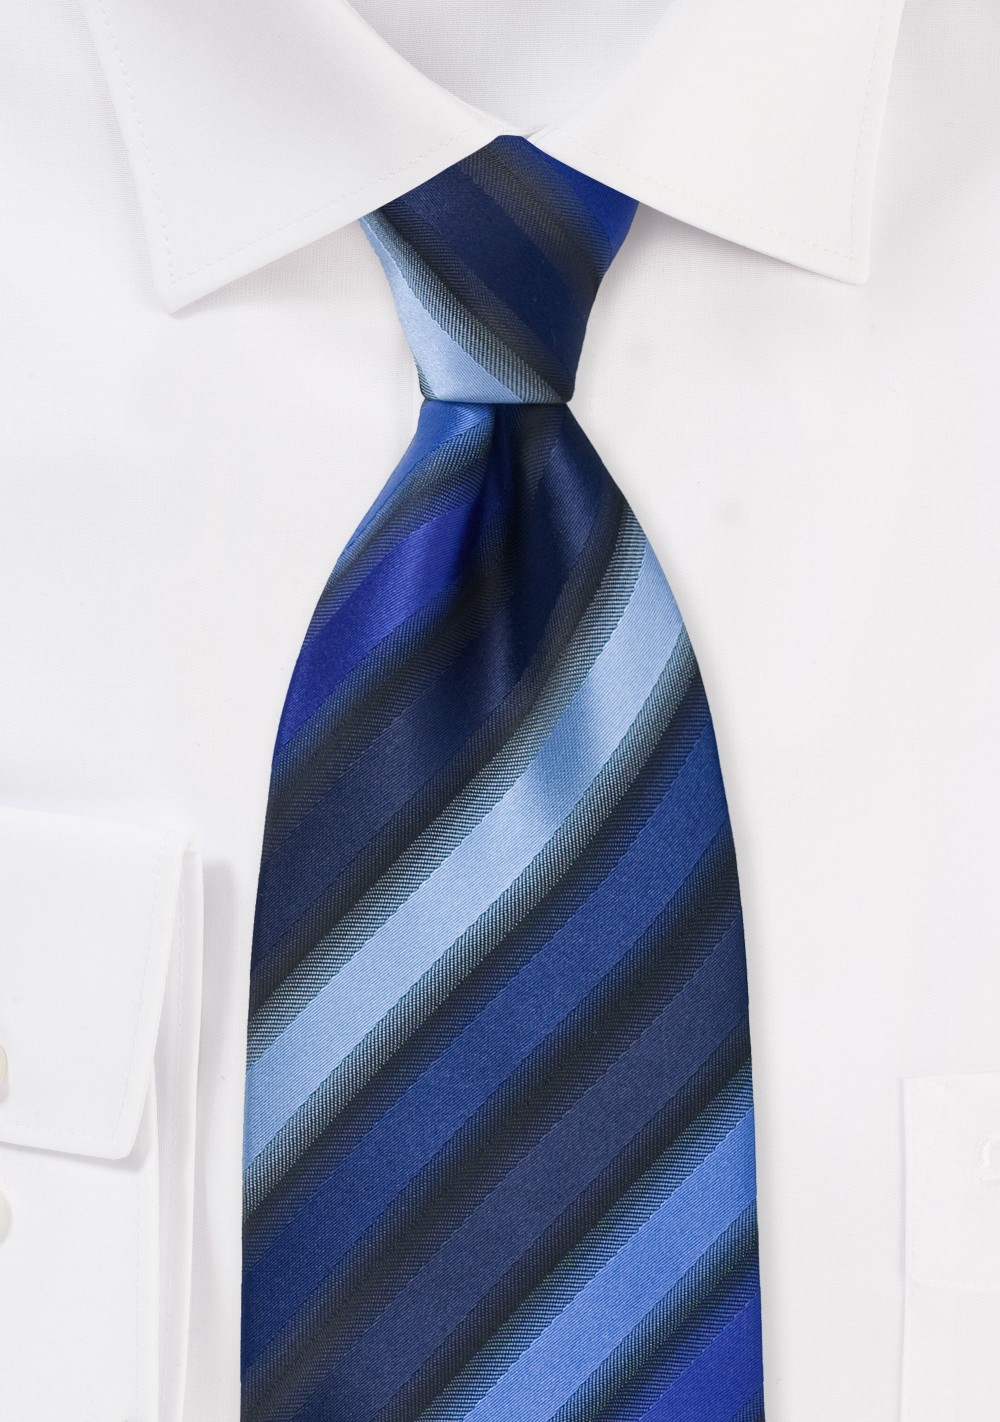 Striped Tie in Tonal Blues